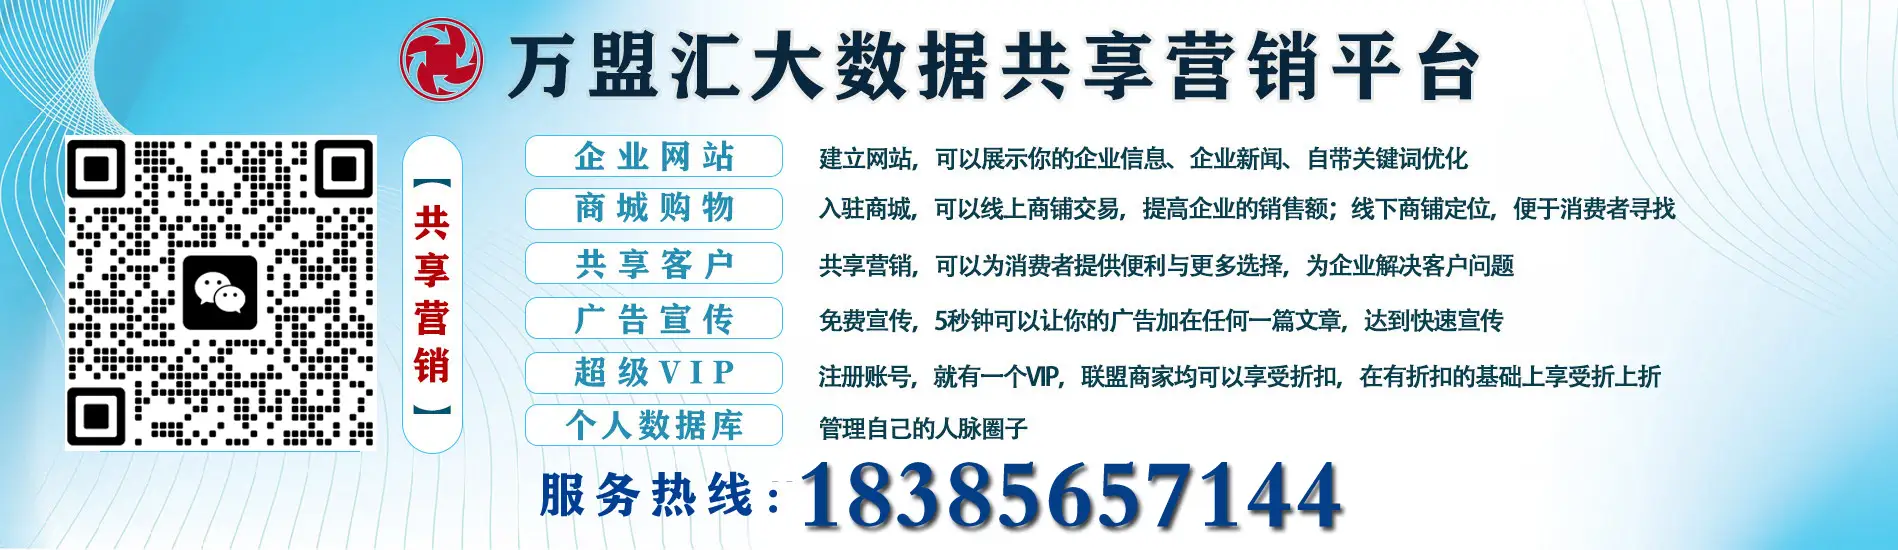 贵阳福翔信贷科技服务有限公司